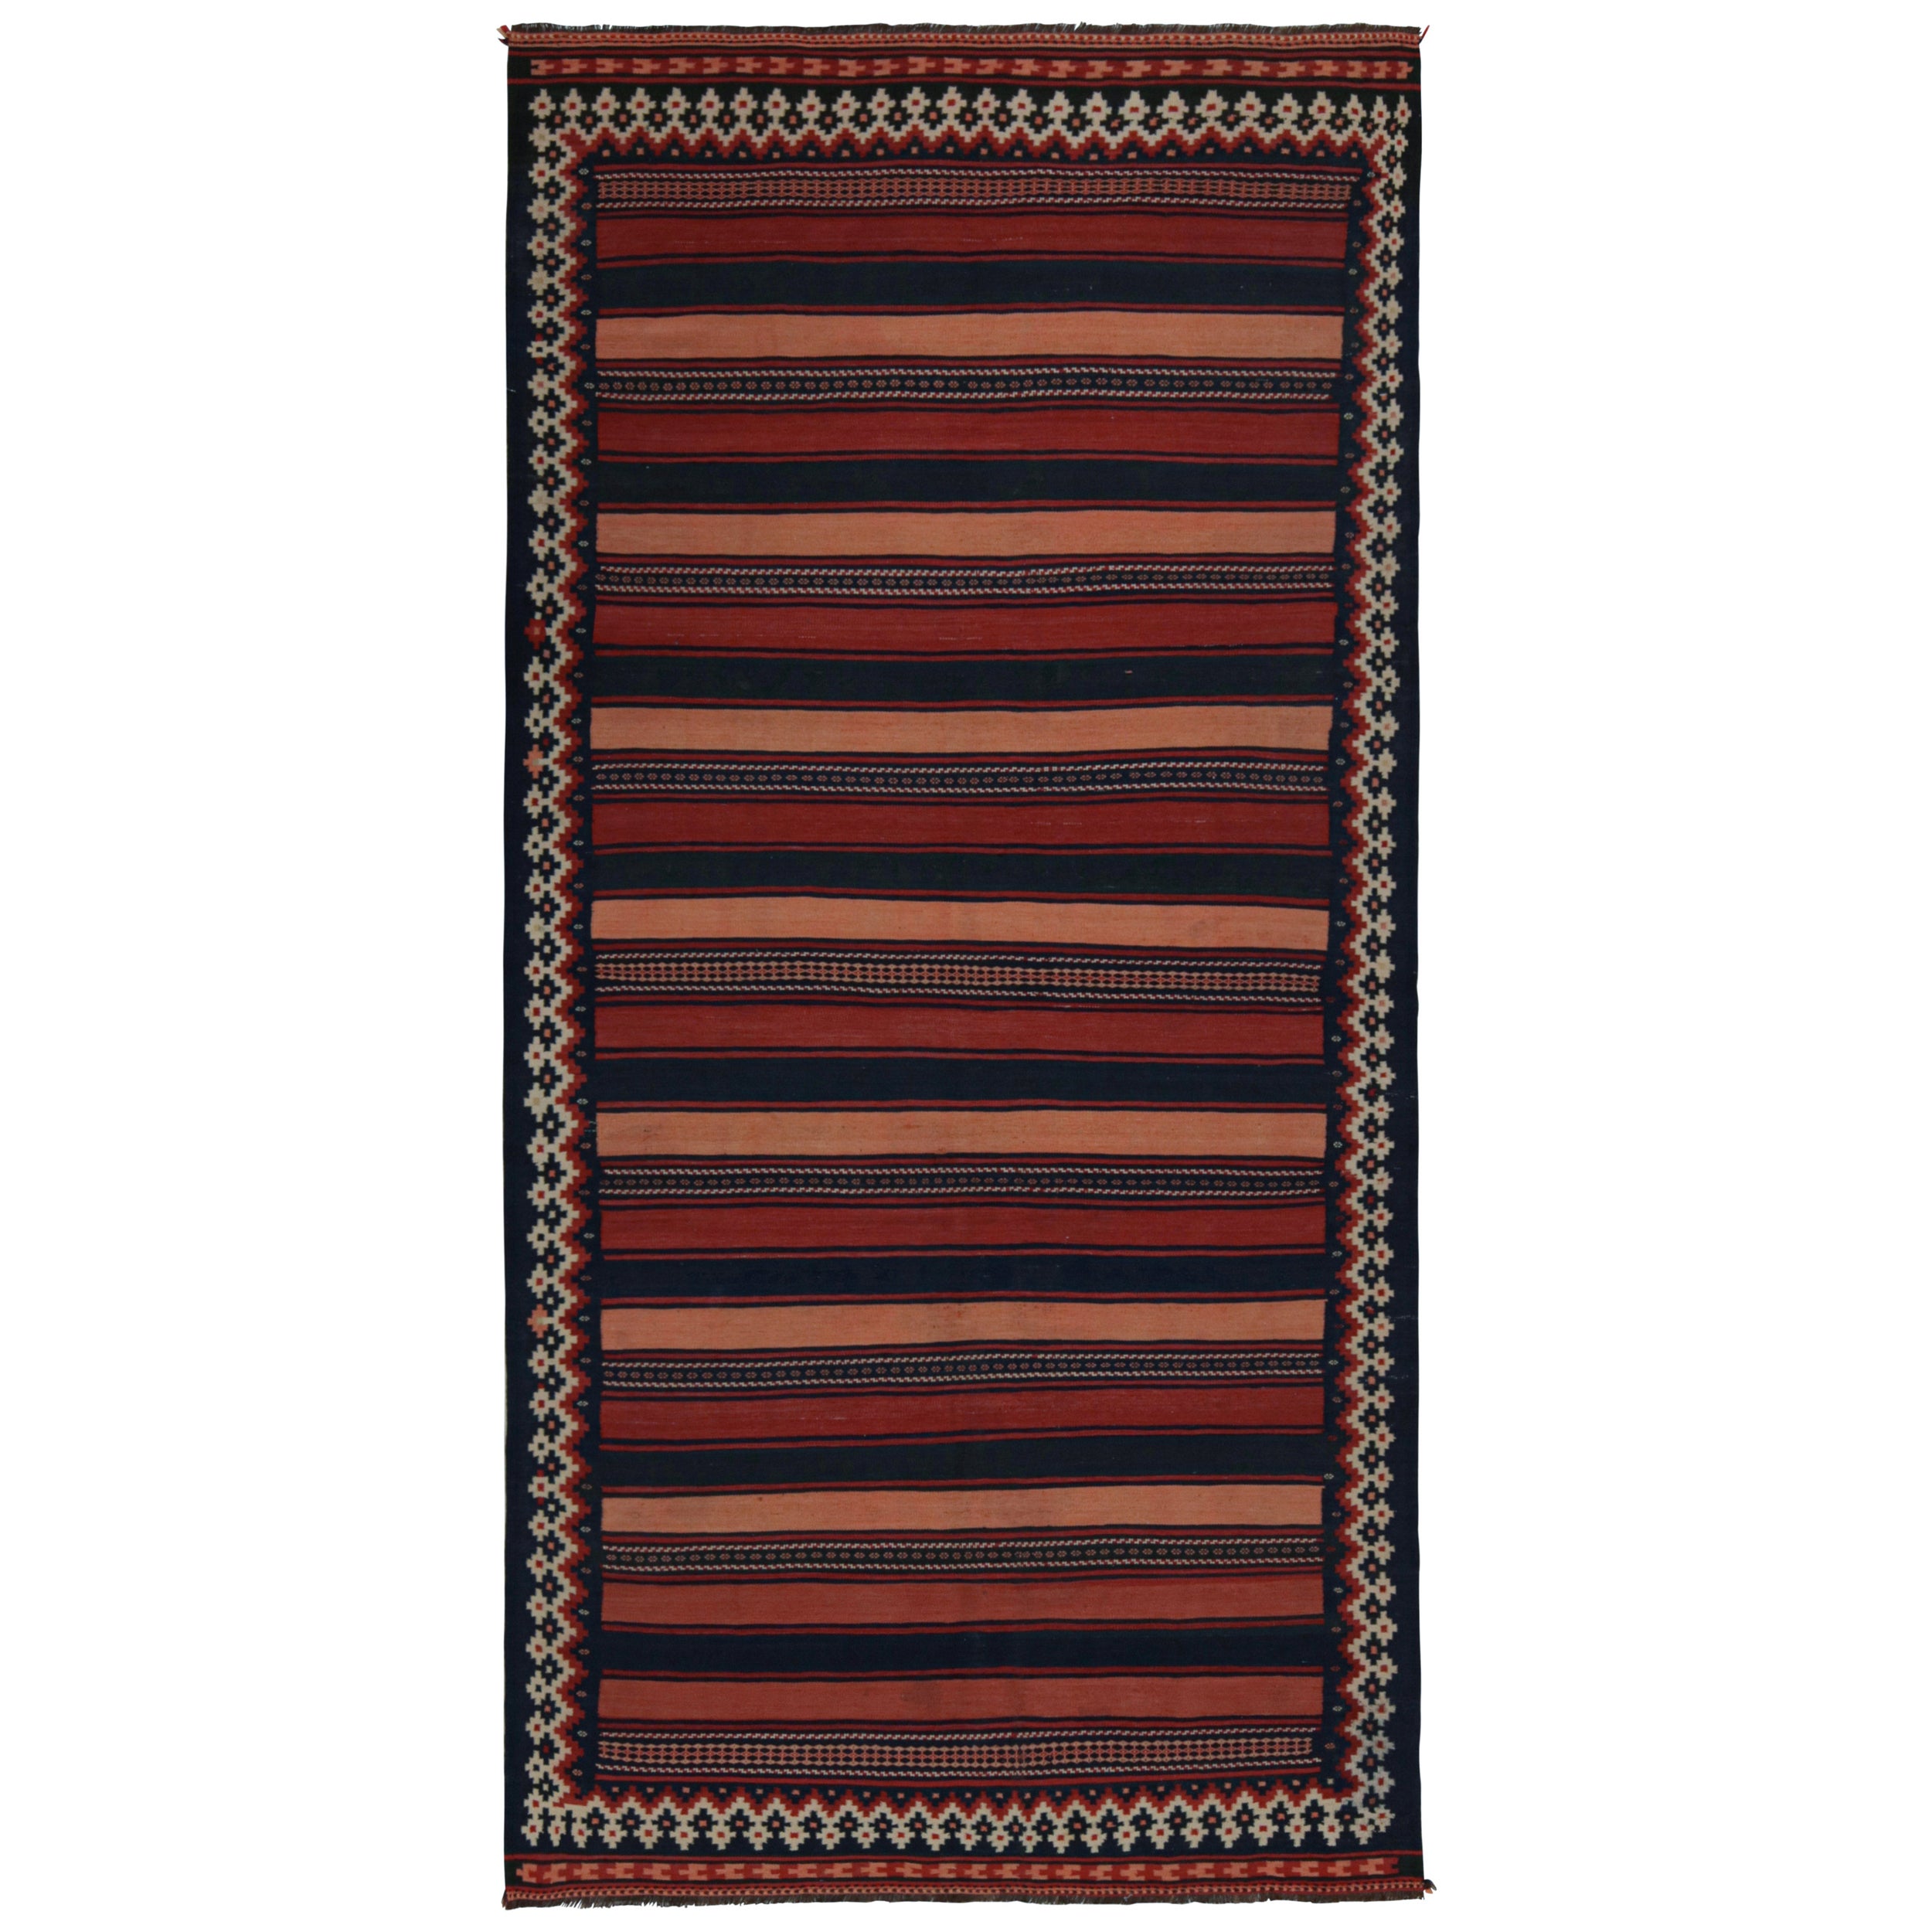 Vintage Afghani tribal Kilim runner rug, in Beige/brown, from Rug & Kilim For Sale